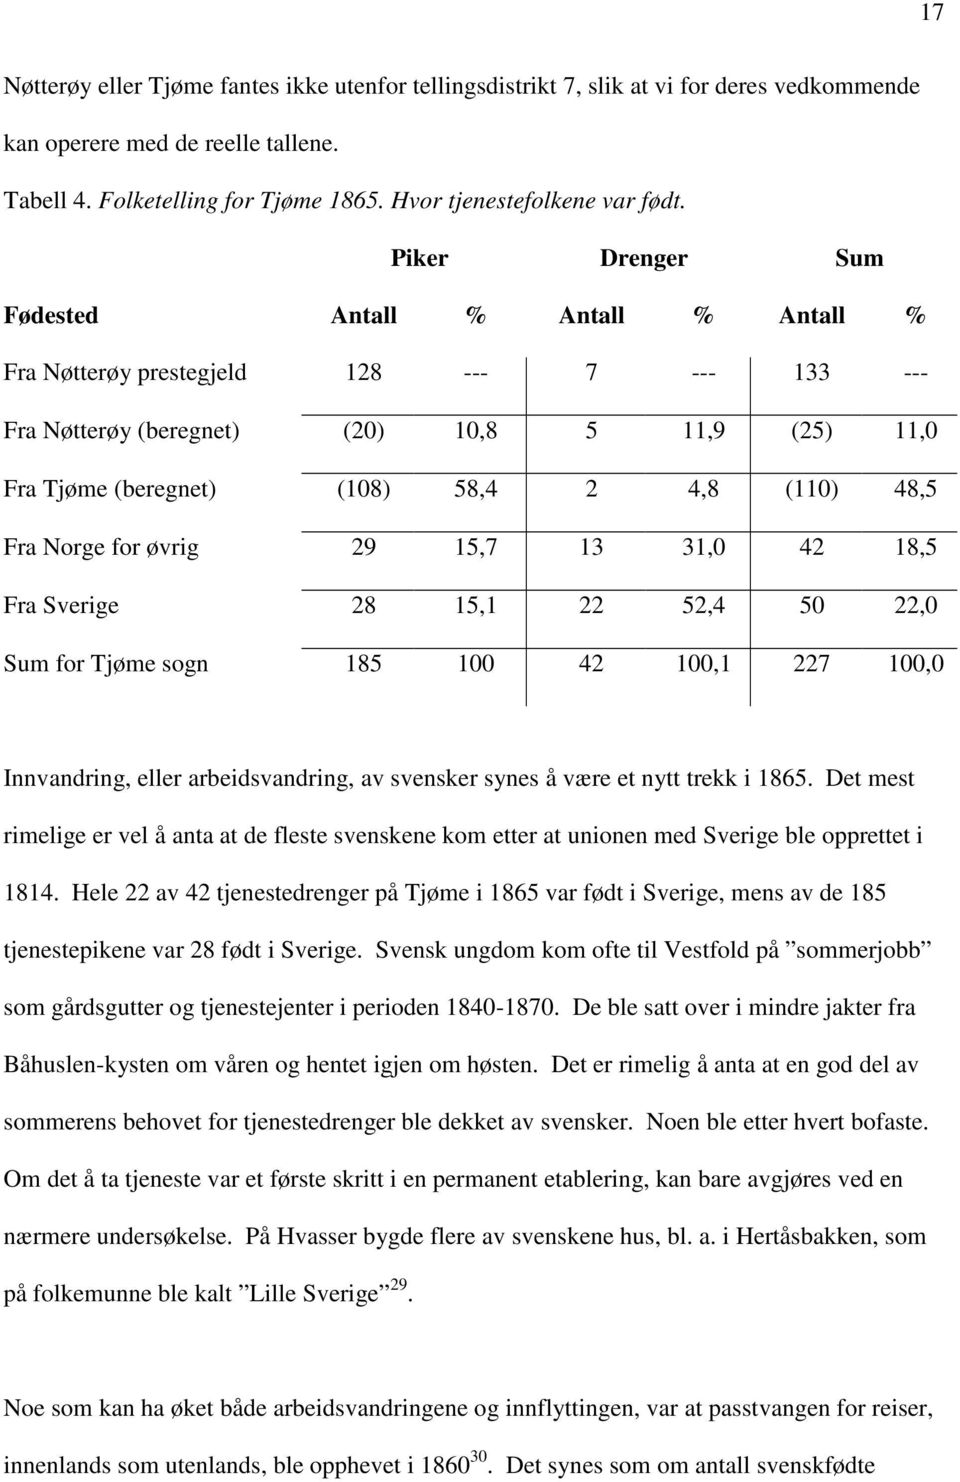 Piker Drenger Sum Fødested Antall % Antall % Antall % Fra Nøtterøy prestegjeld 128 --- 7 --- 133 --- Fra Nøtterøy (beregnet) (20) 10,8 5 11,9 (25) 11,0 Fra Tjøme (beregnet) (108) 58,4 2 4,8 (110)